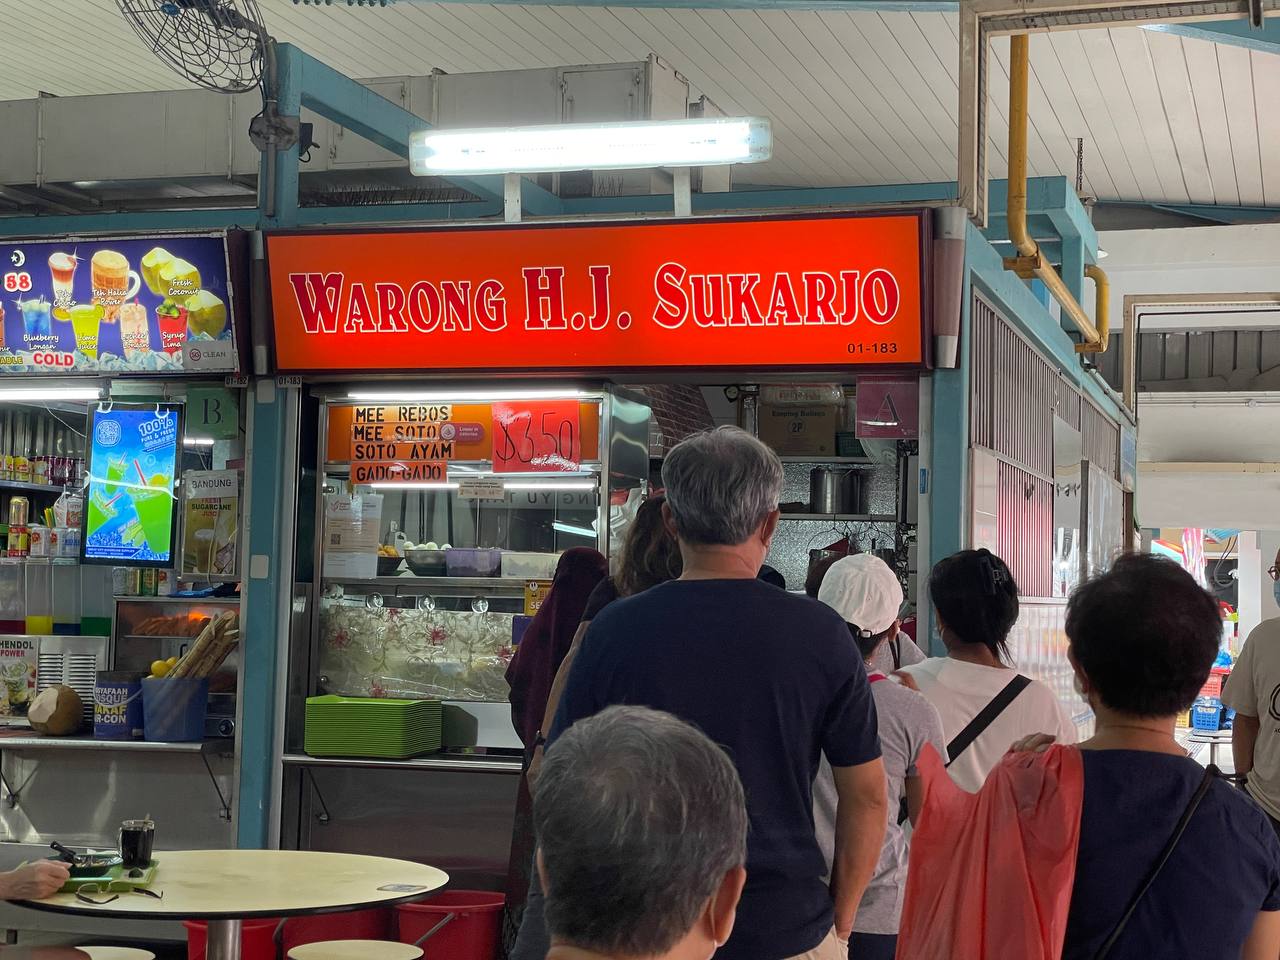 Warong H.J. Sukarjo - storefront